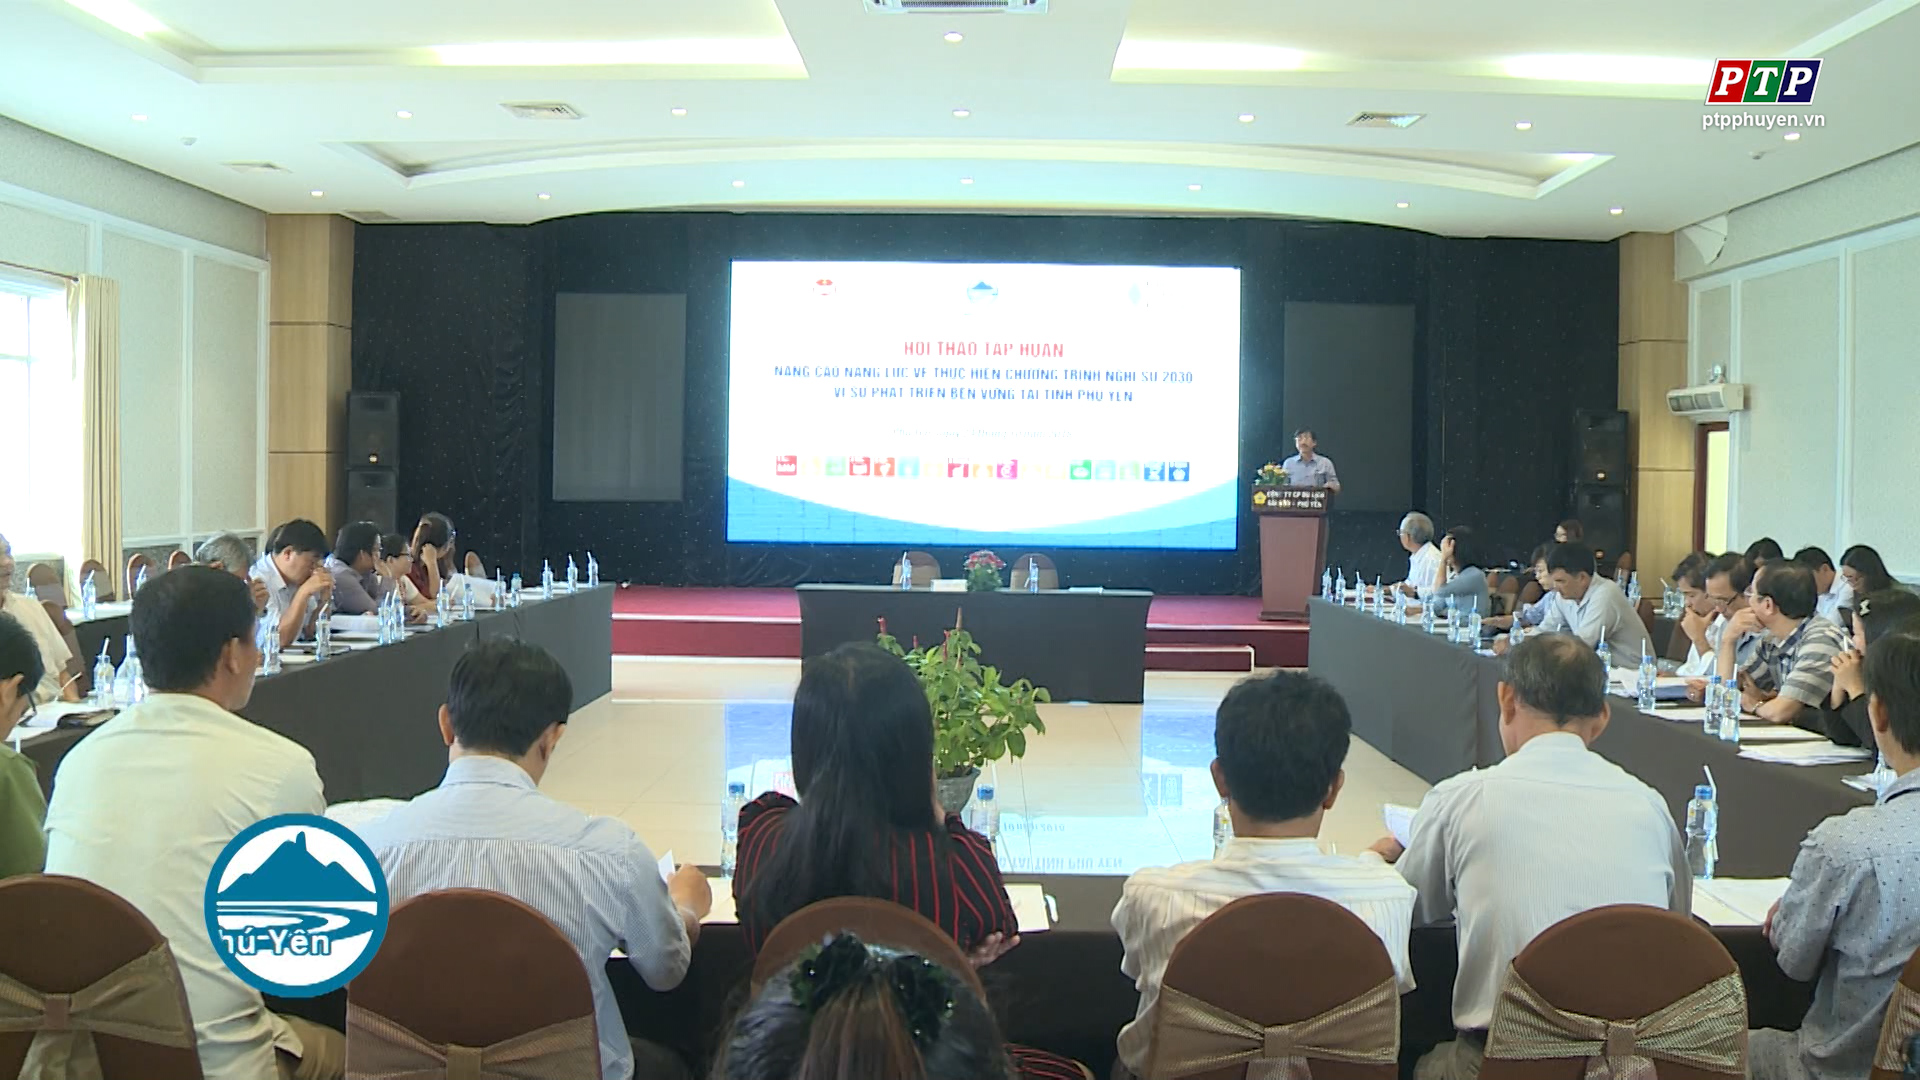 Hội thảo tập huấn nâng cao năng lực về thực hiện chương trình nghị sự 2030 vì sự phát triển bền vững tại tỉnh Phú Yên